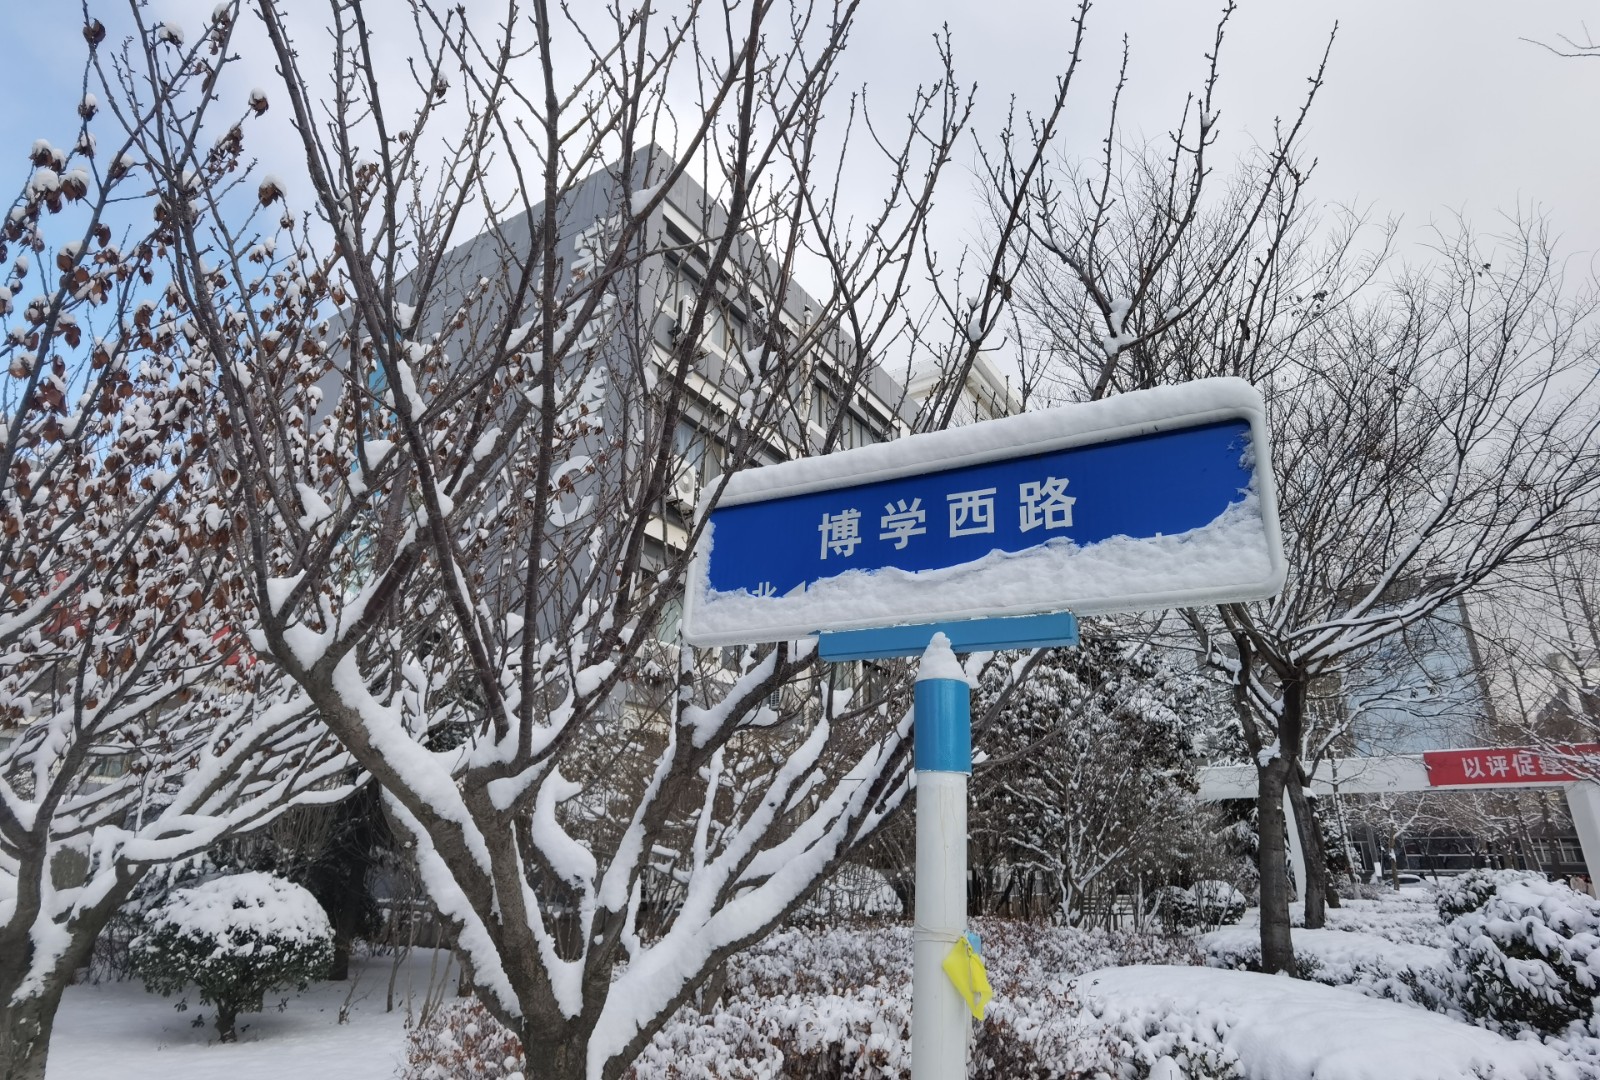 滨州医学院雪后美景。 王艳杰 滨州医学院第二临床医学院